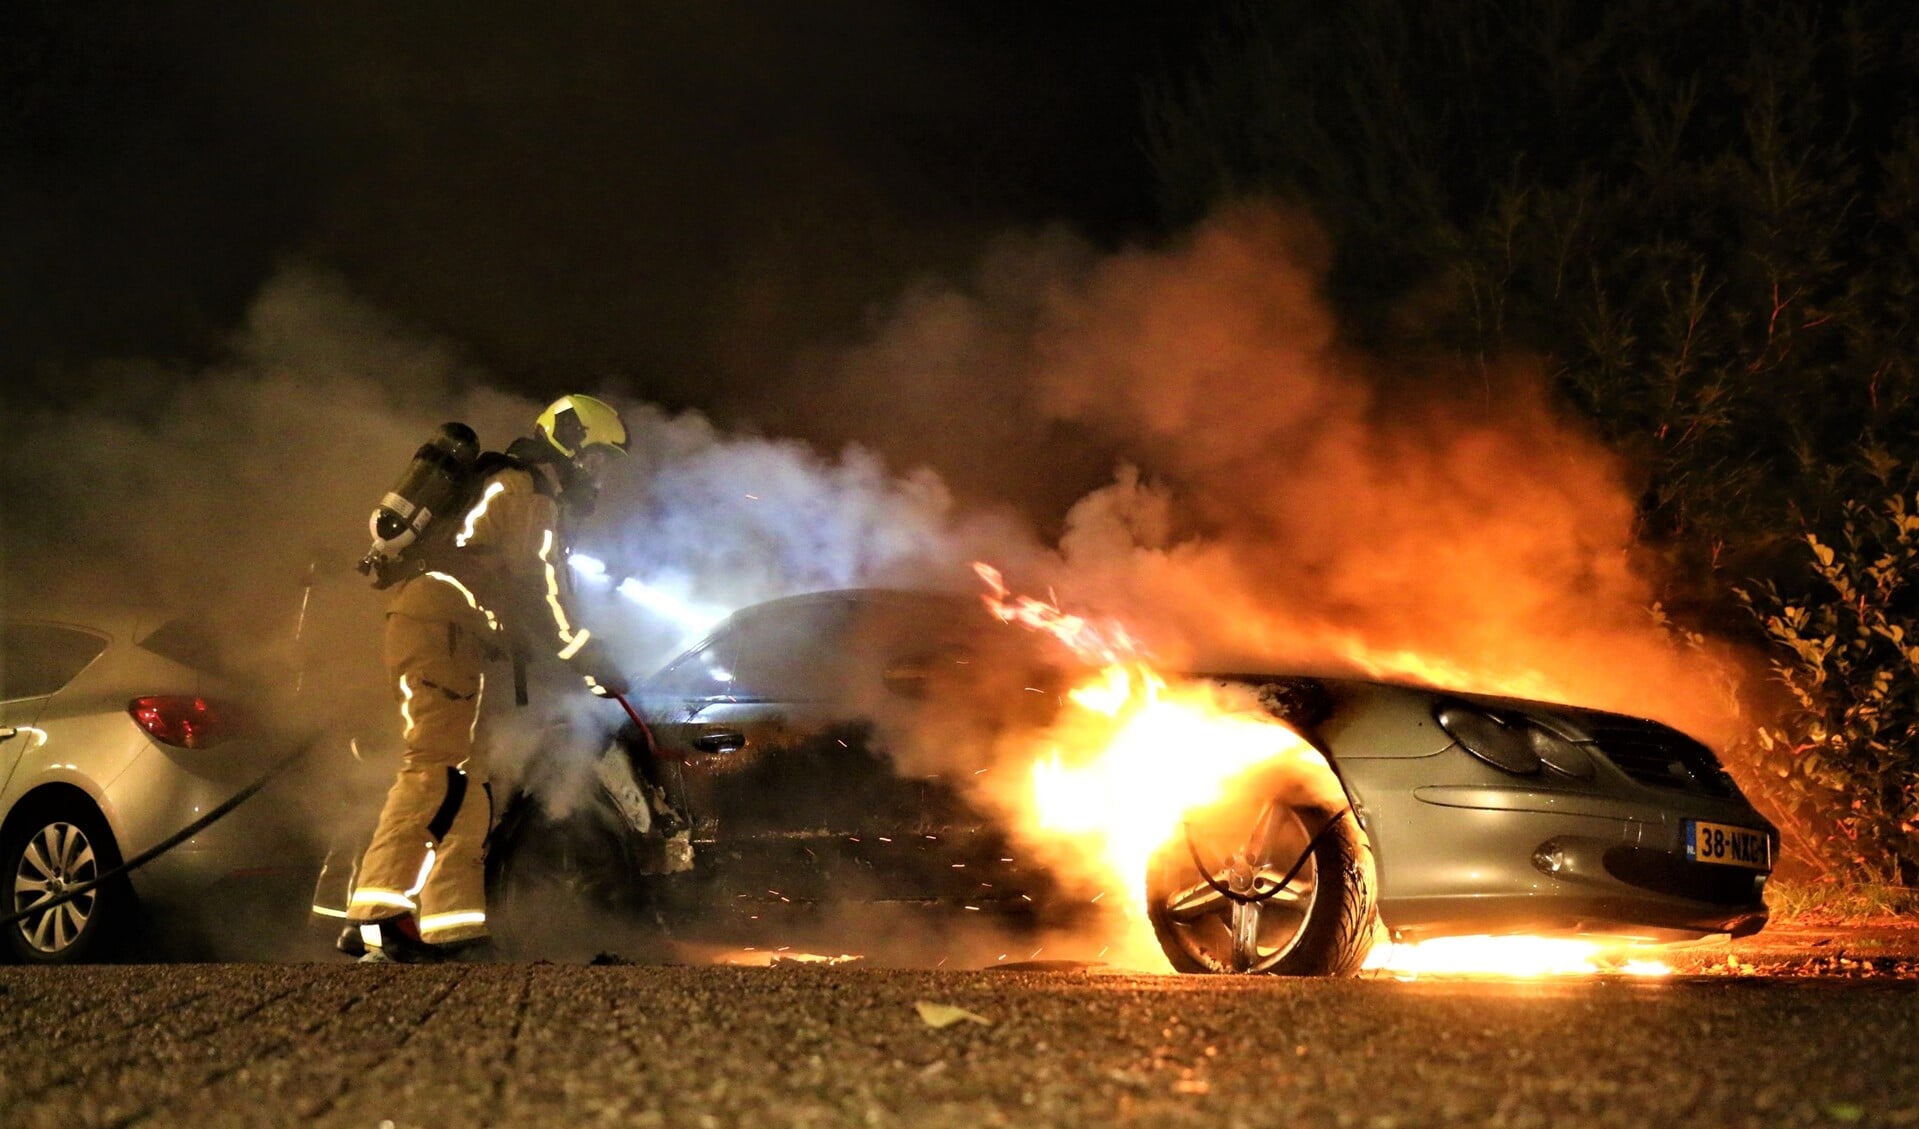 De auto stond vrijwel volledig in brand en kon na te zijn geblust als verloren worden beschouwd foto: Nick van Mourik).